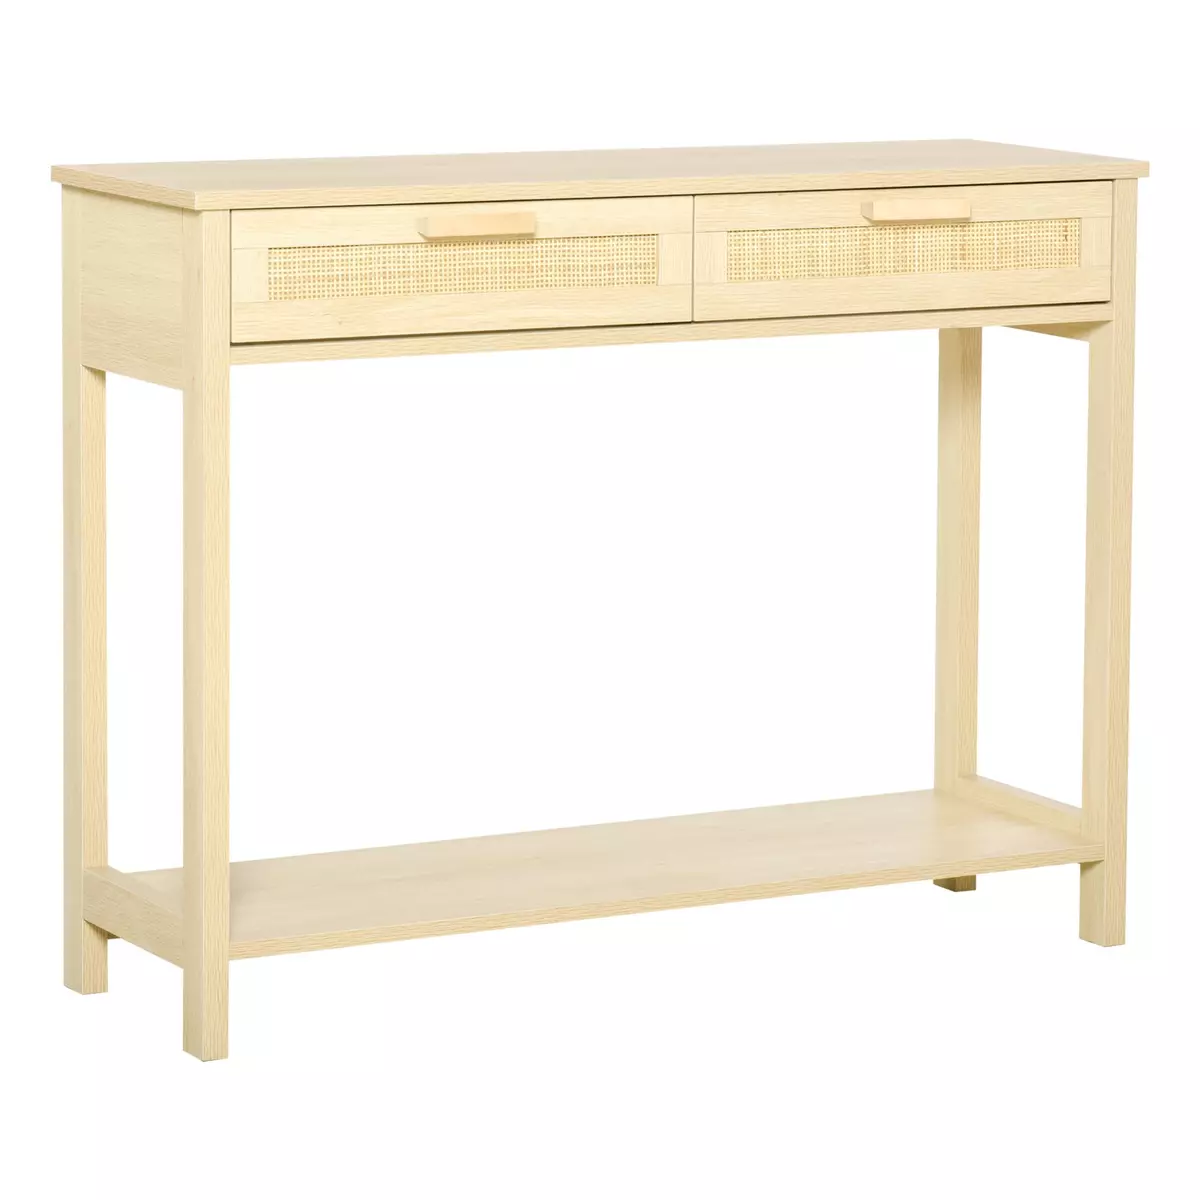 HOMCOM Console table d'appoint dim. 100L x 30l x 76H cm 2 tiroirs façades cannage en rotin étagère MDF aspect bois clair